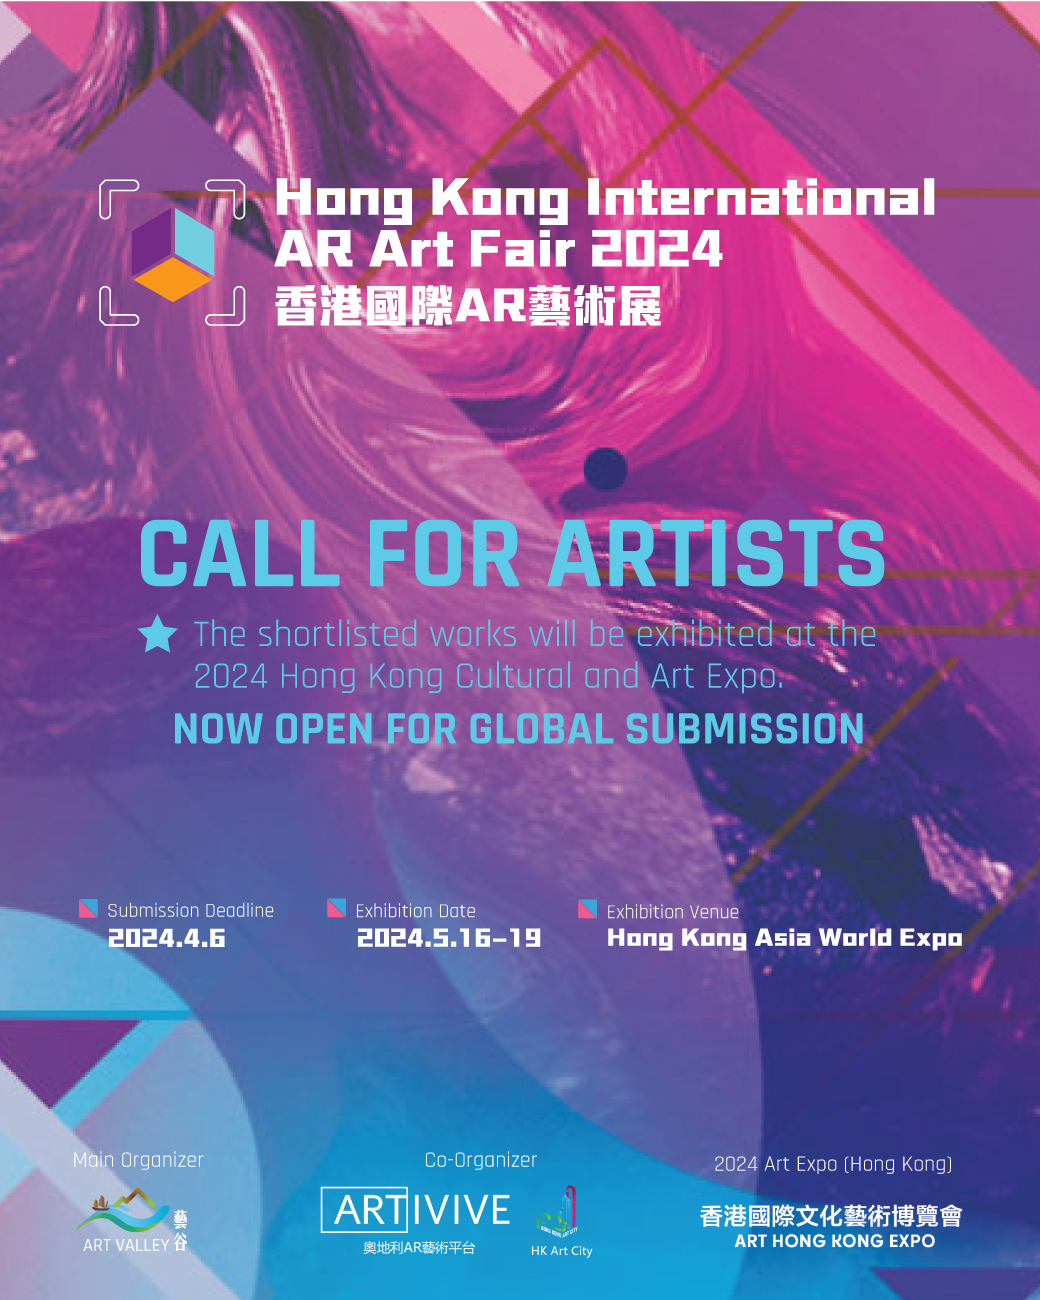 Hong Kong International AR Art Fair 2024 Art Valley